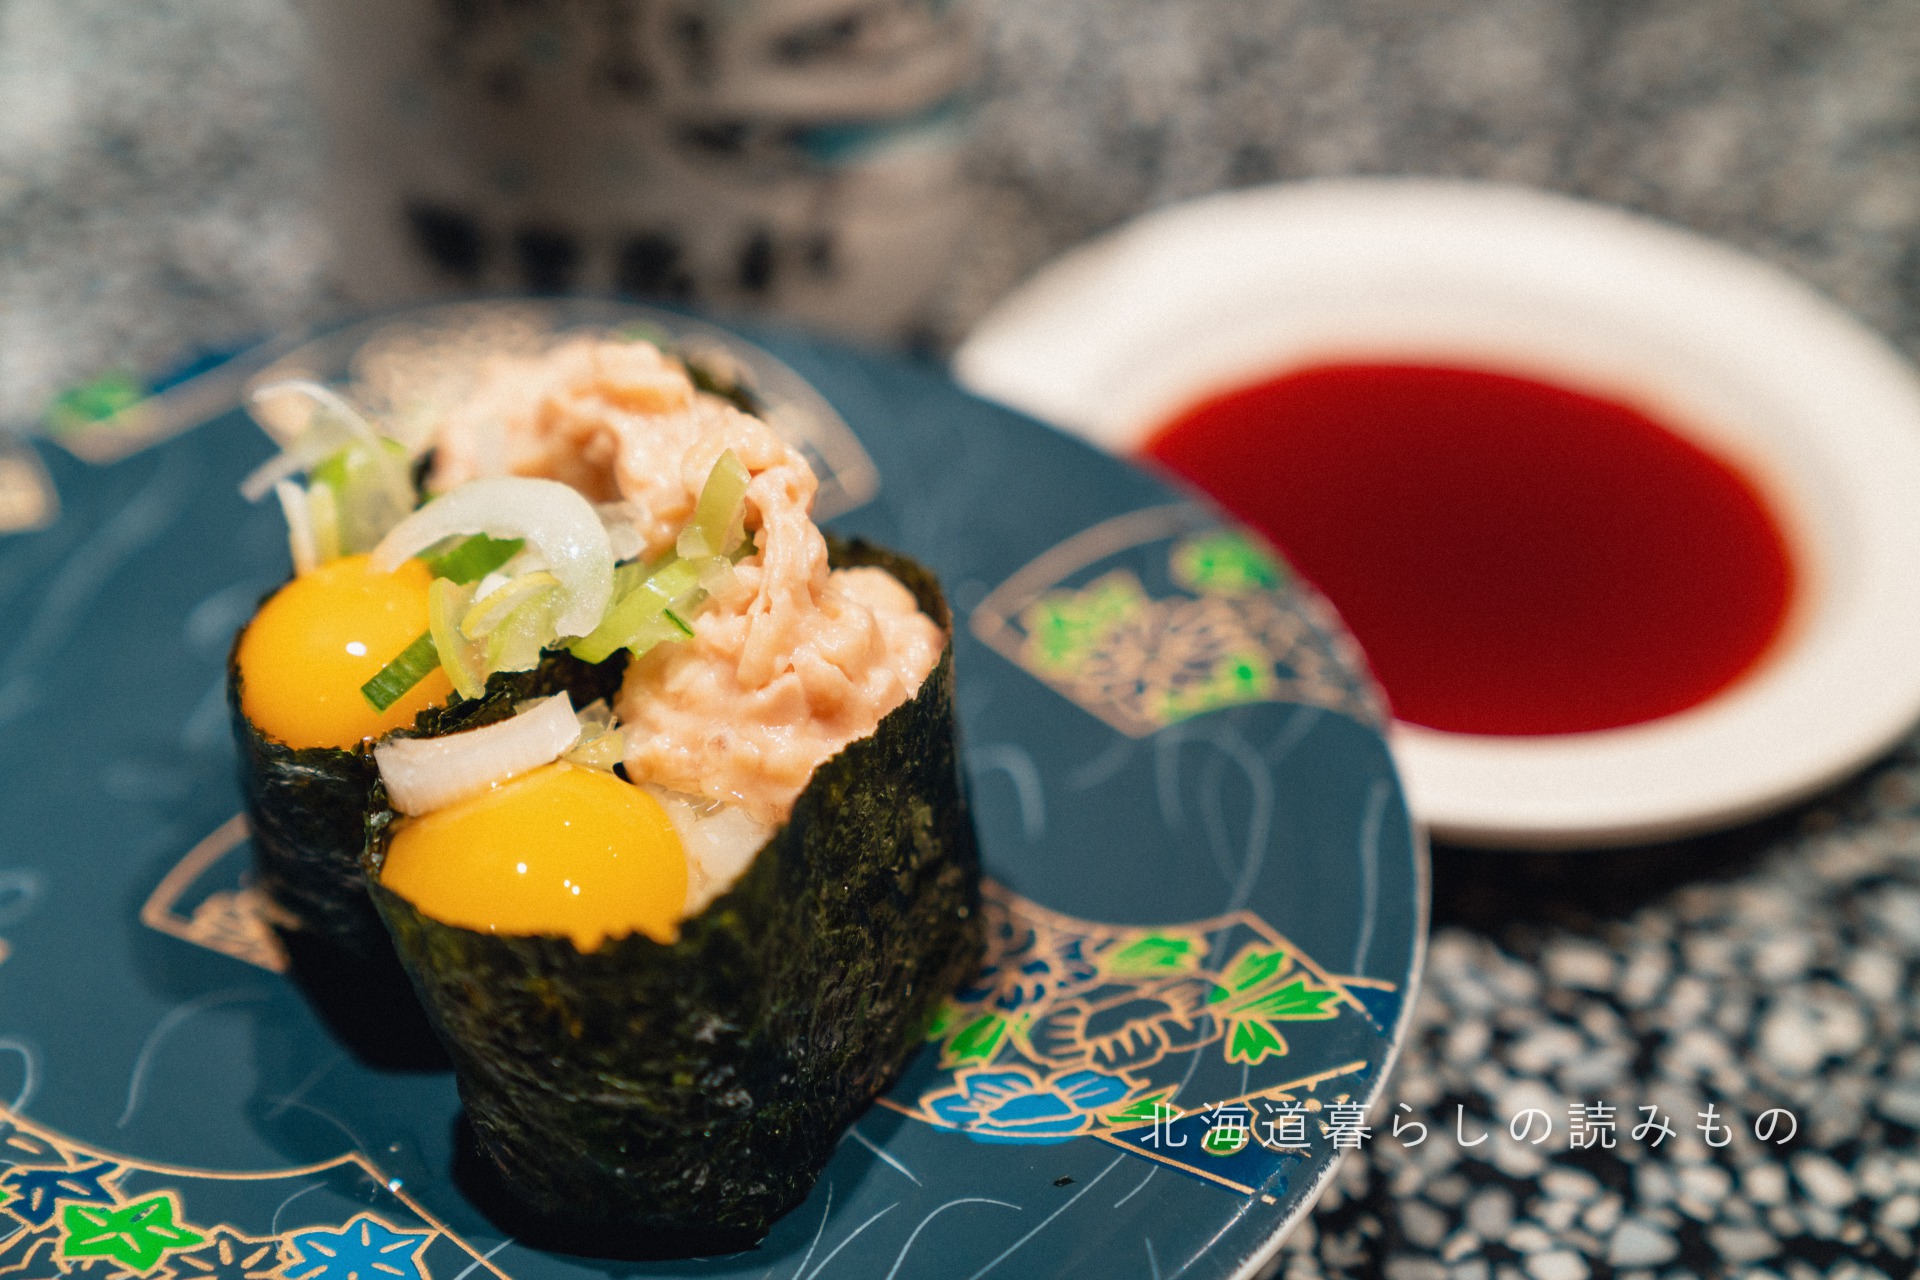 回転寿司 根室花まるのメニュー「月見納豆」の写真